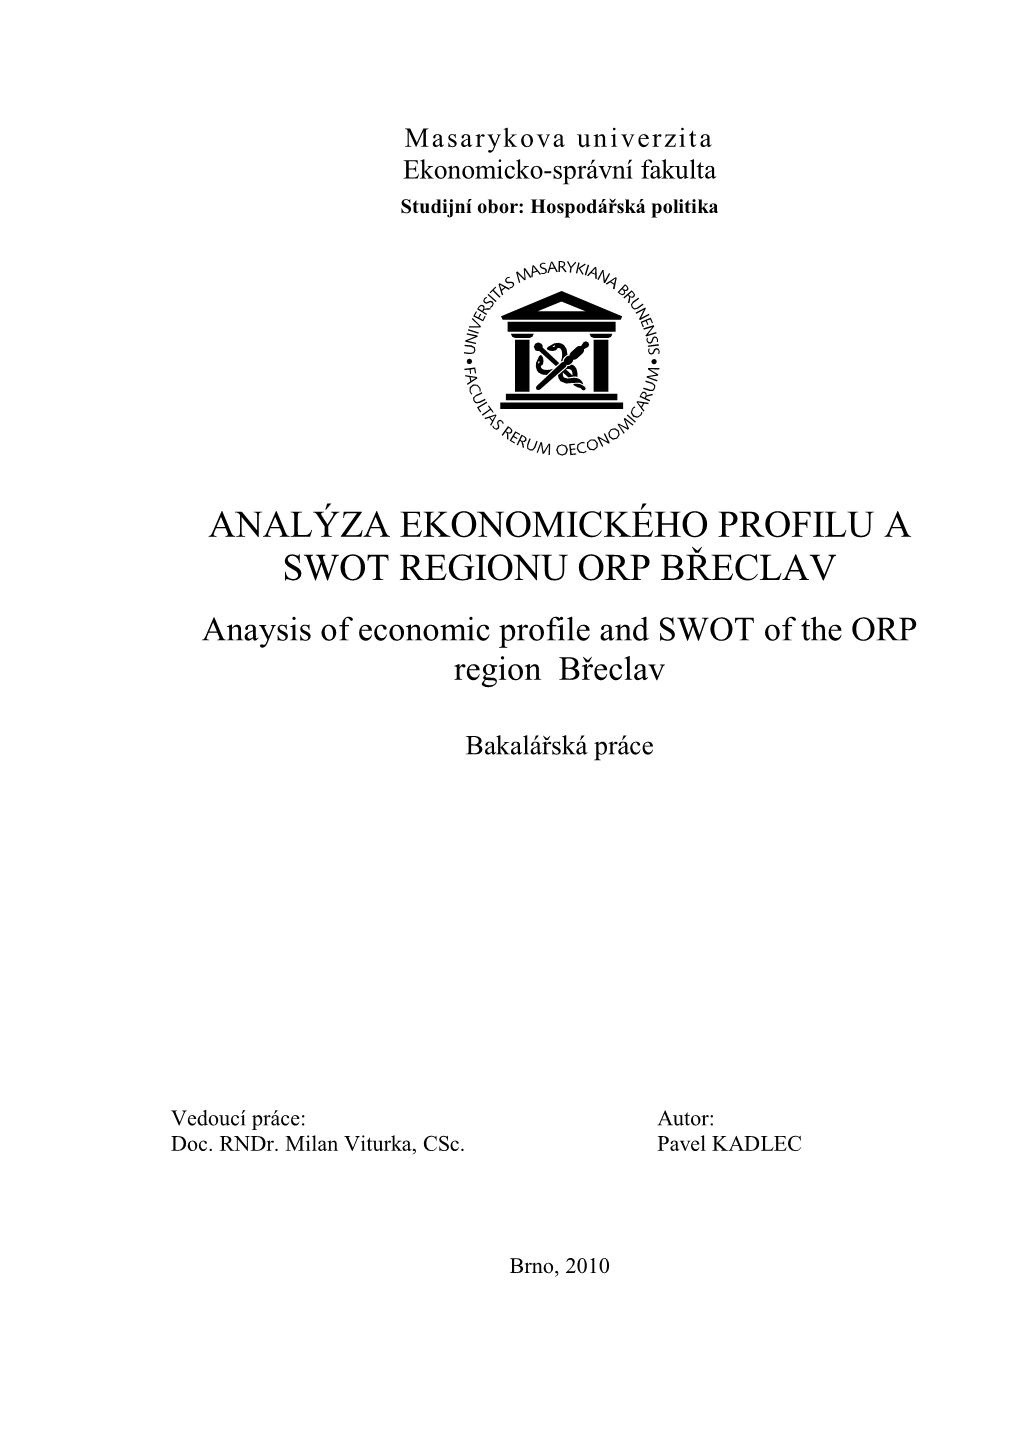 ANALÝZA EKONOMICKÉHO PROFILU a SWOT REGIONU ORP BŘECLAV Anaysis of Economic Profile and SWOT of the ORP Region Břeclav